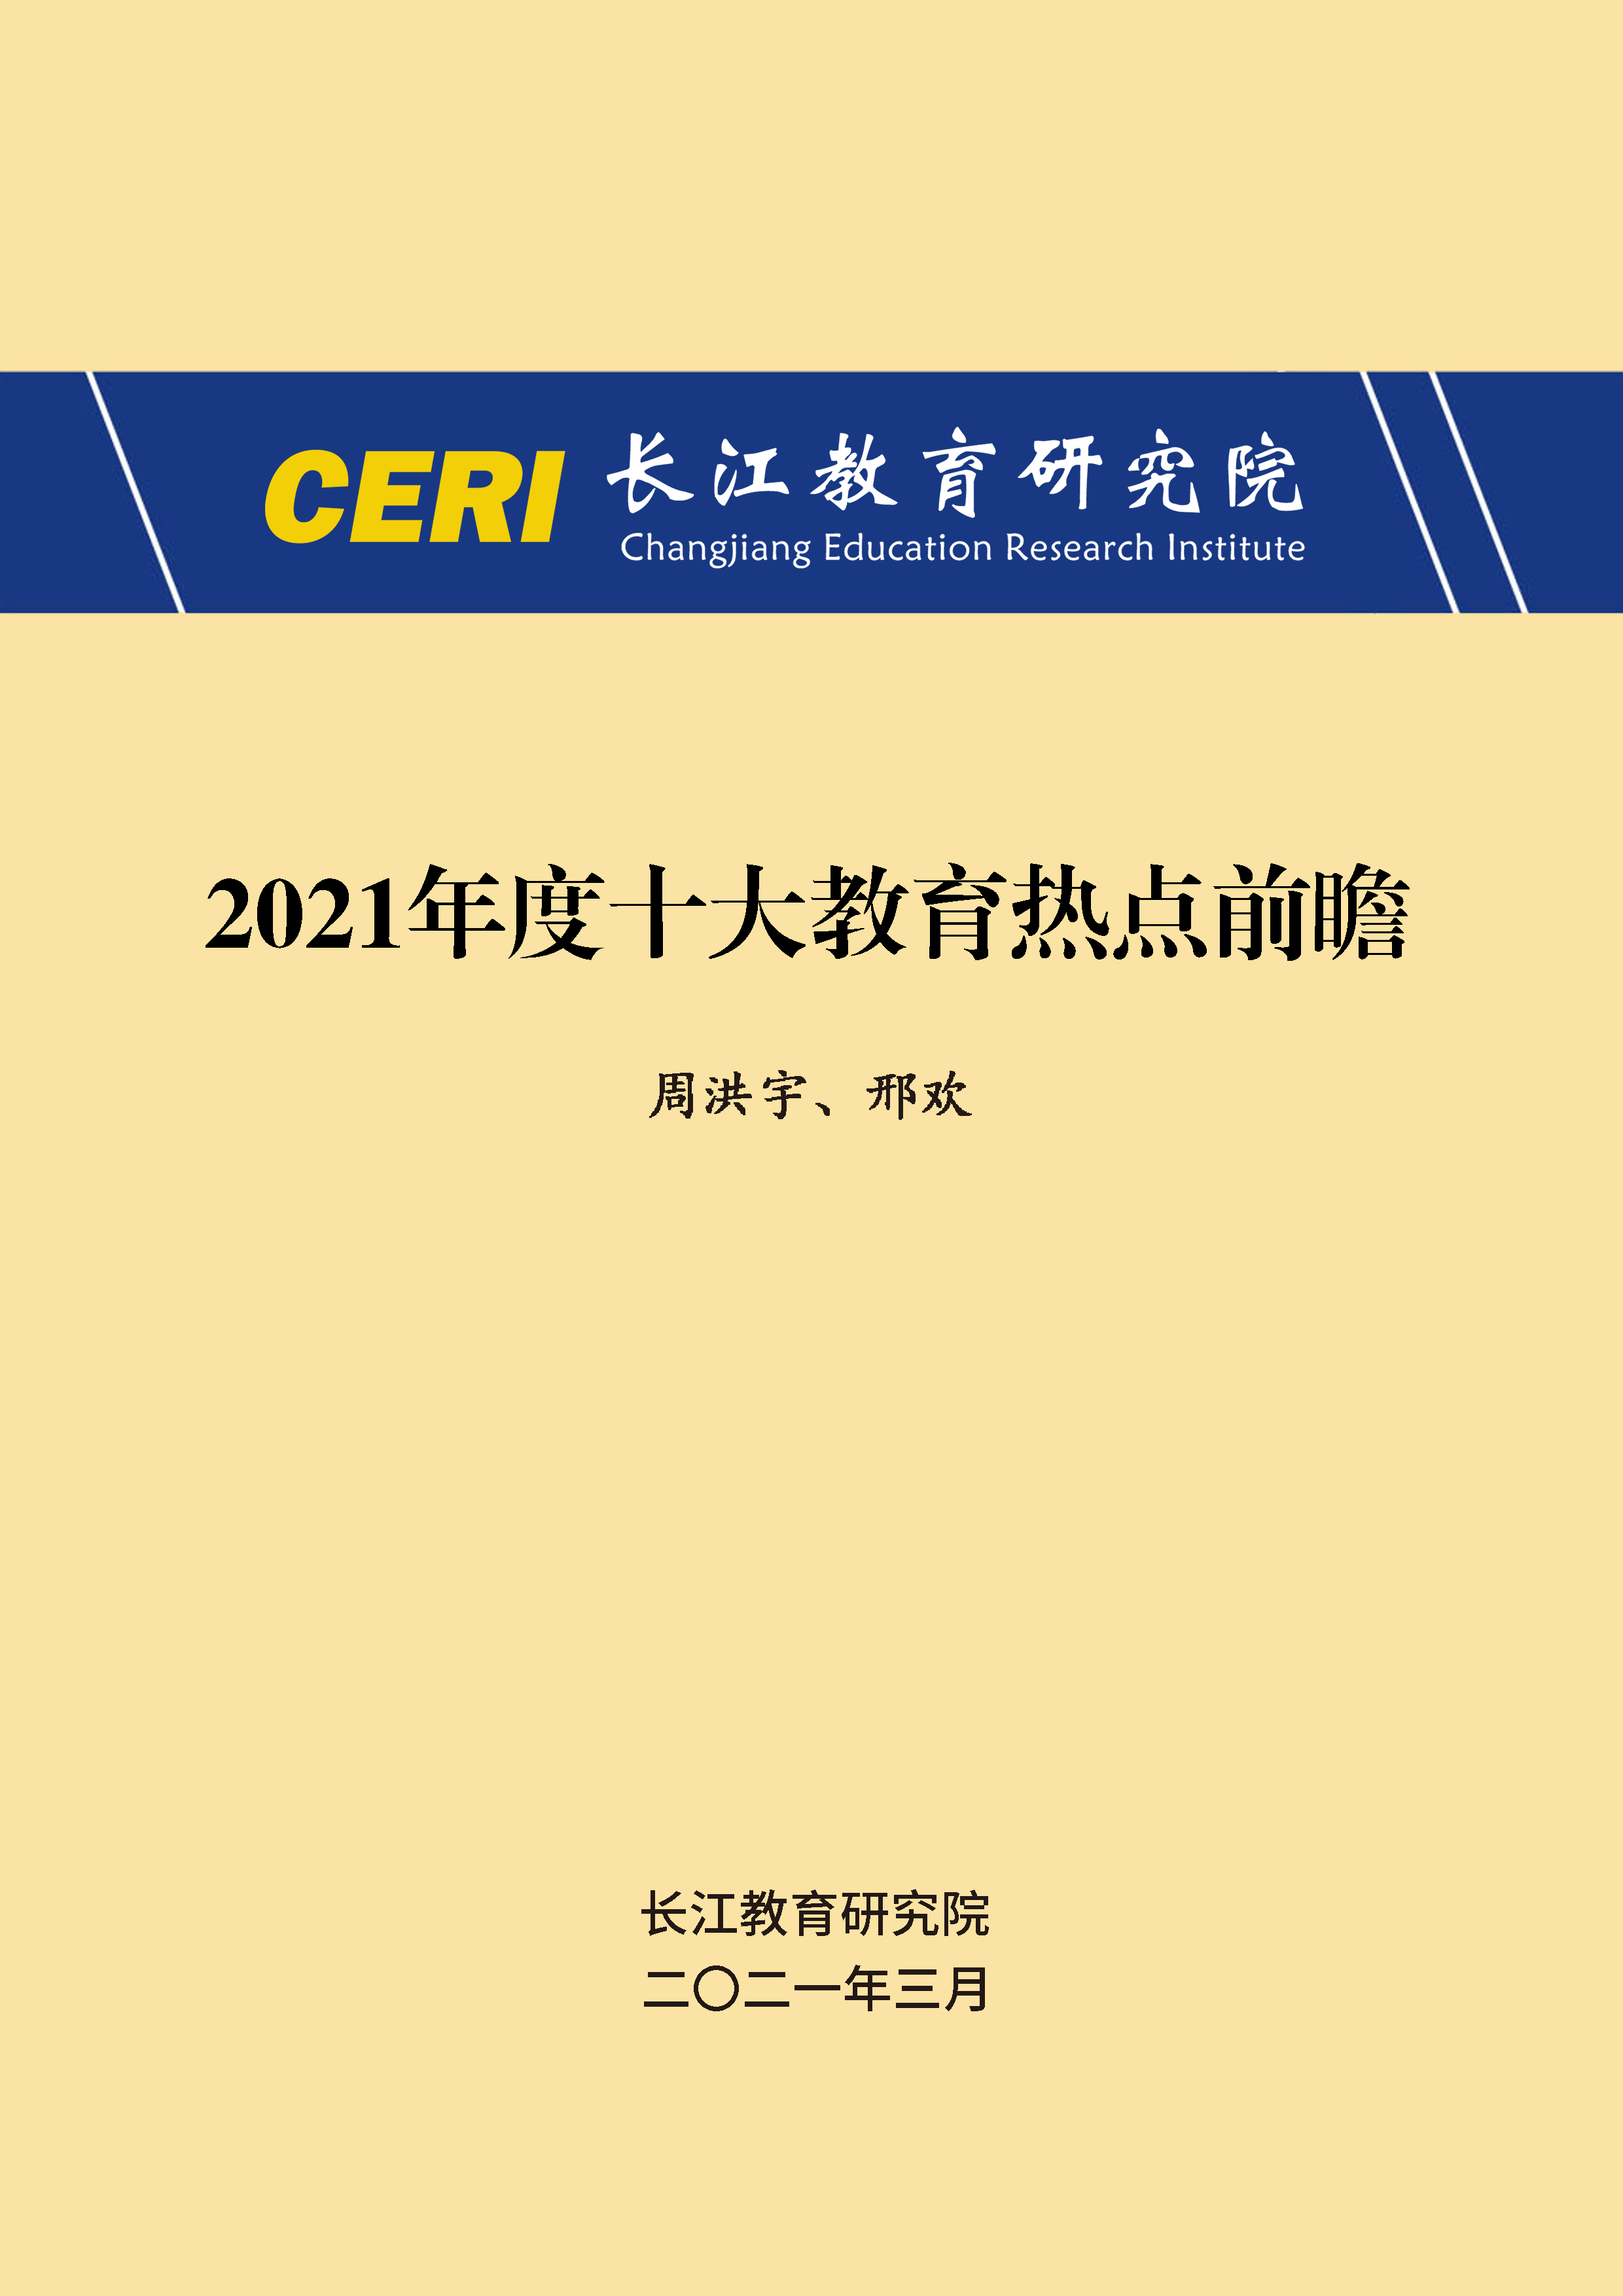 2022中国教育研究前沿与热点问题年度报告 >> 教育研究